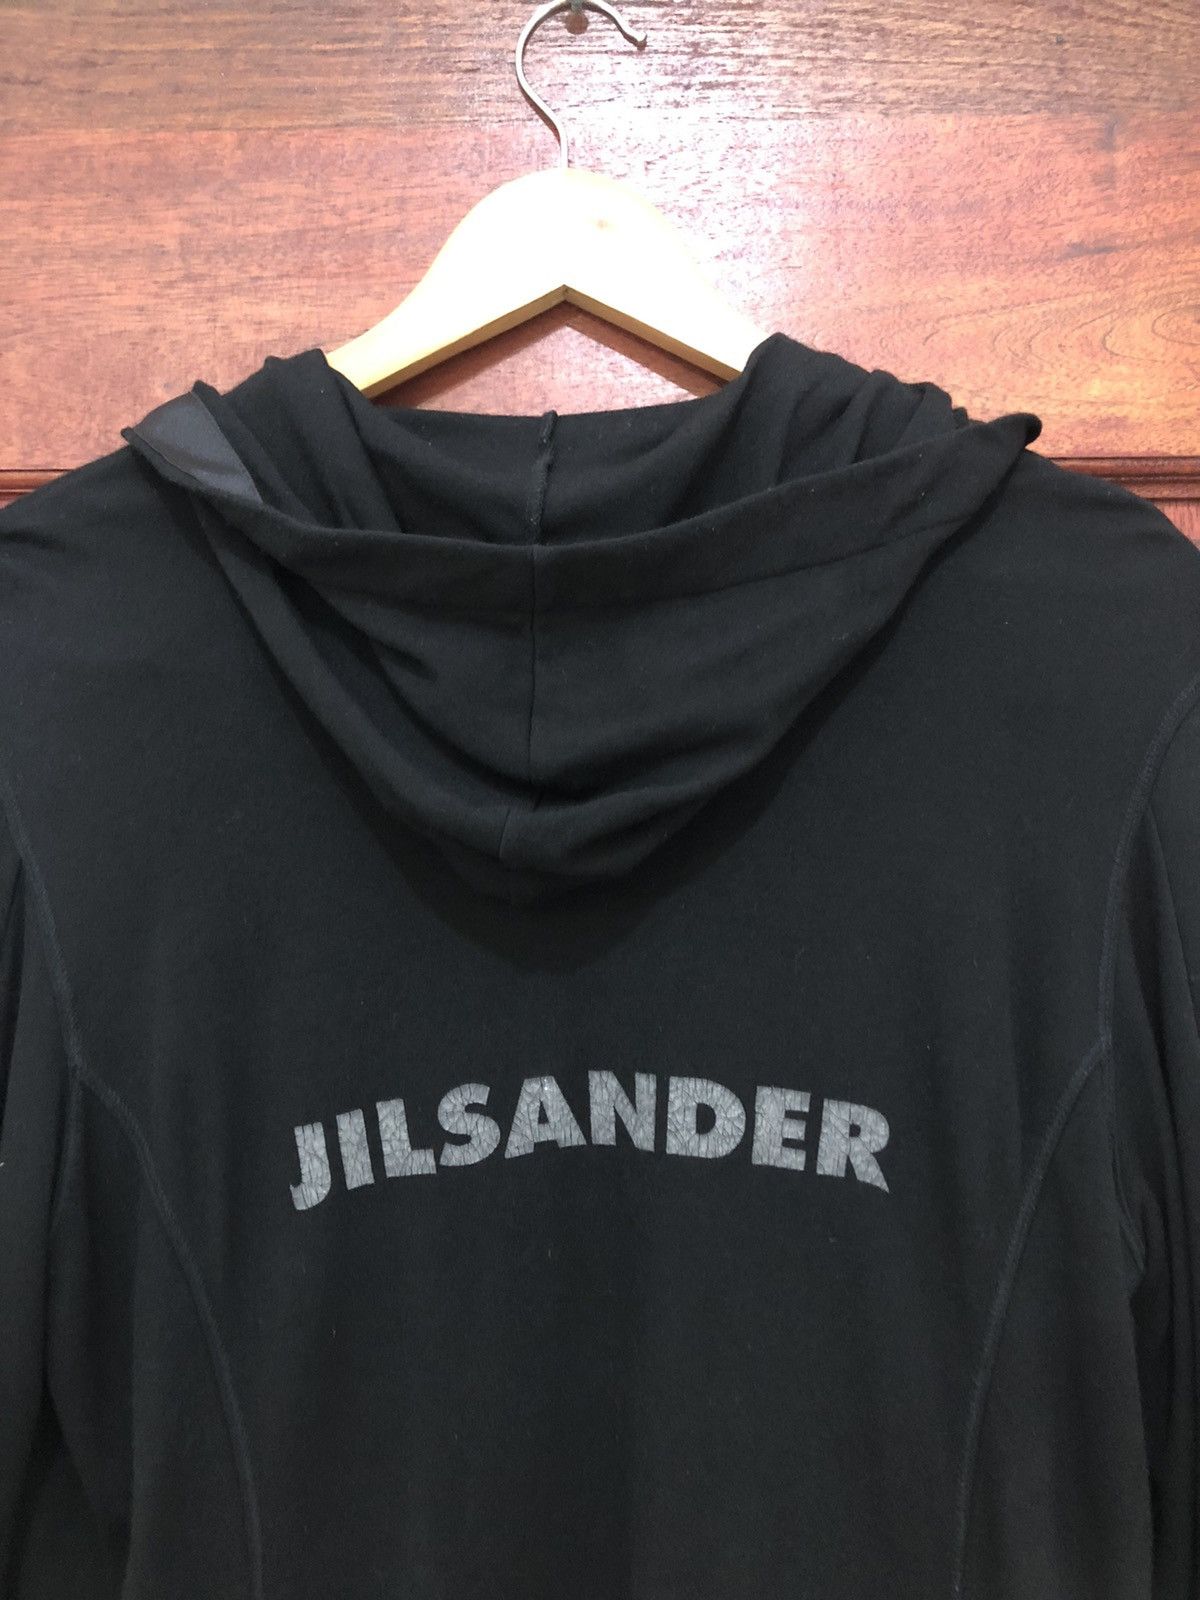 Jil Sander Cropped Sweatshirt Hoodie Italy Made - 4